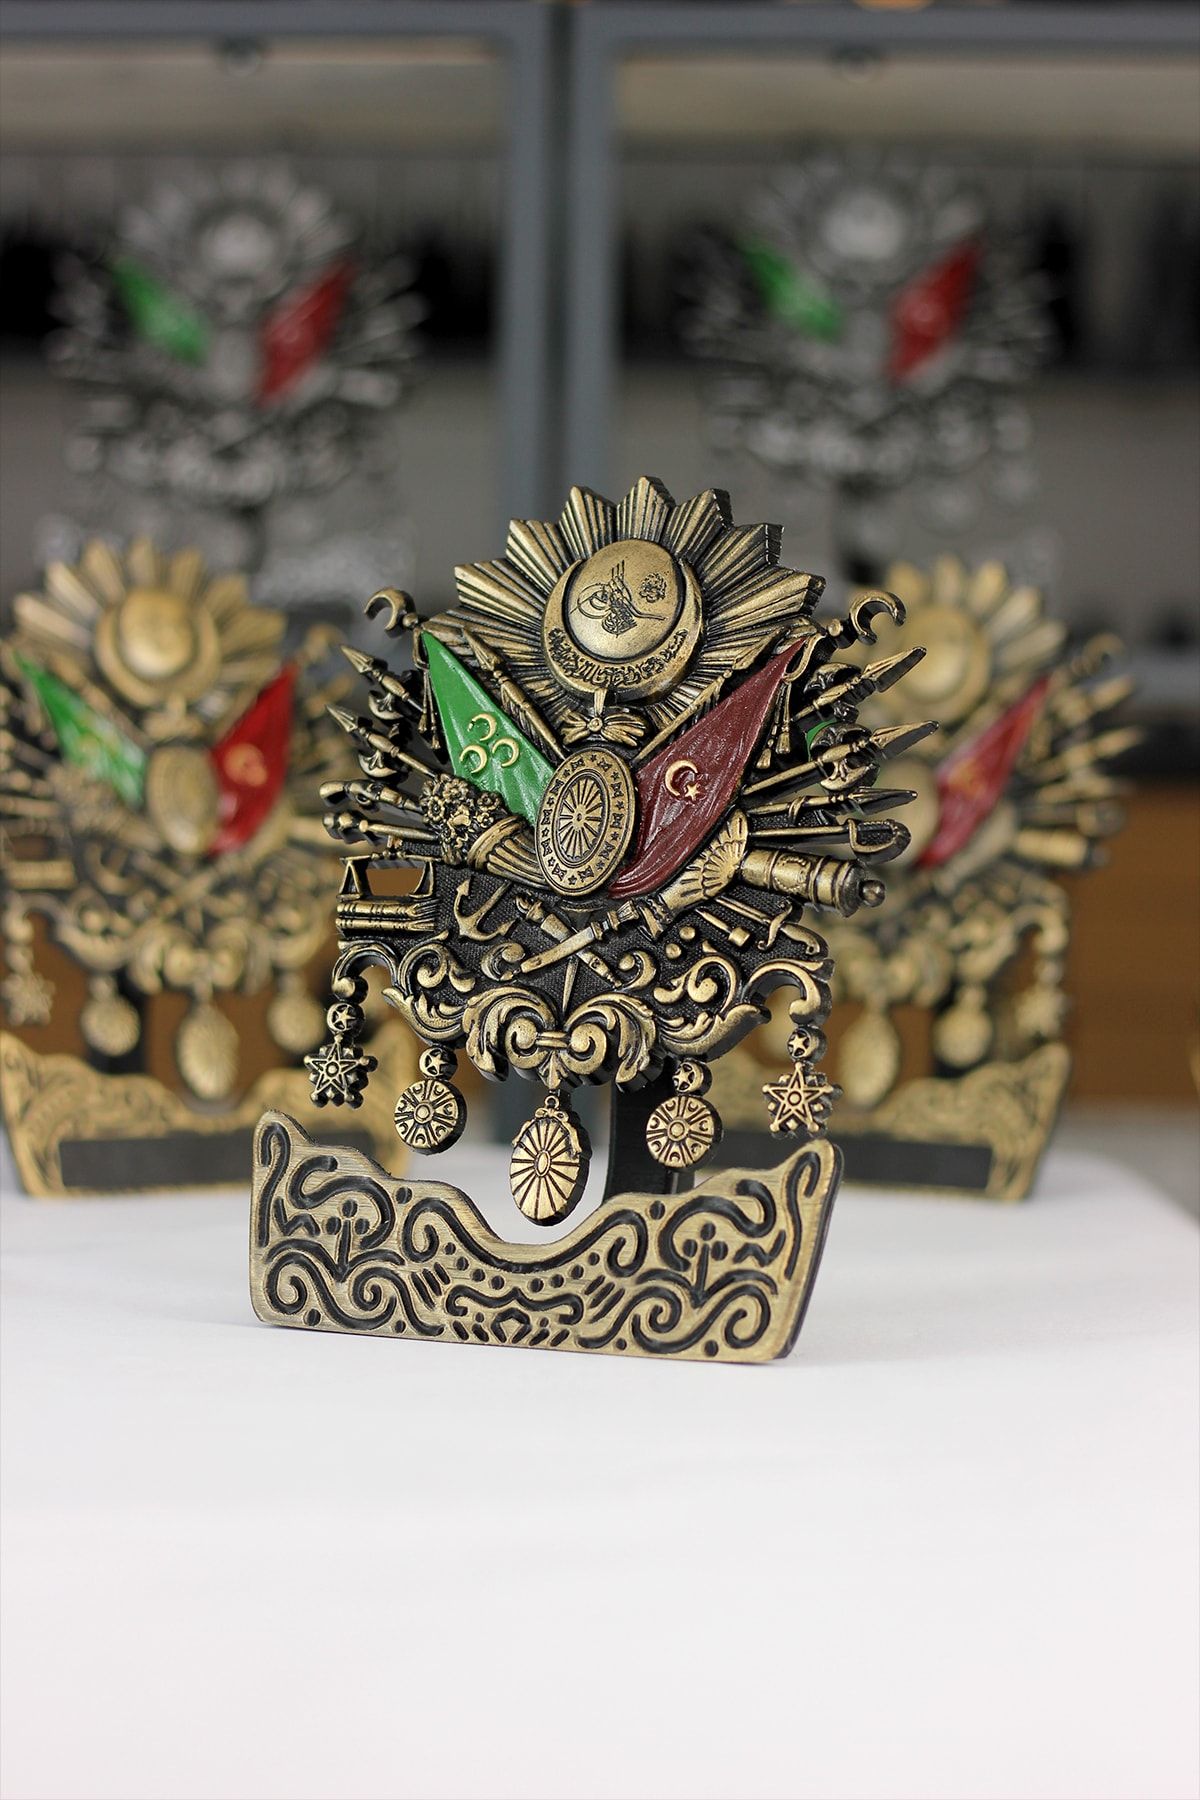 GÜRCÜ 3D Masaüstü Osmanlı Arması Hediyelik Dekoratif Osmanlı Devlet Arması (GOLD)